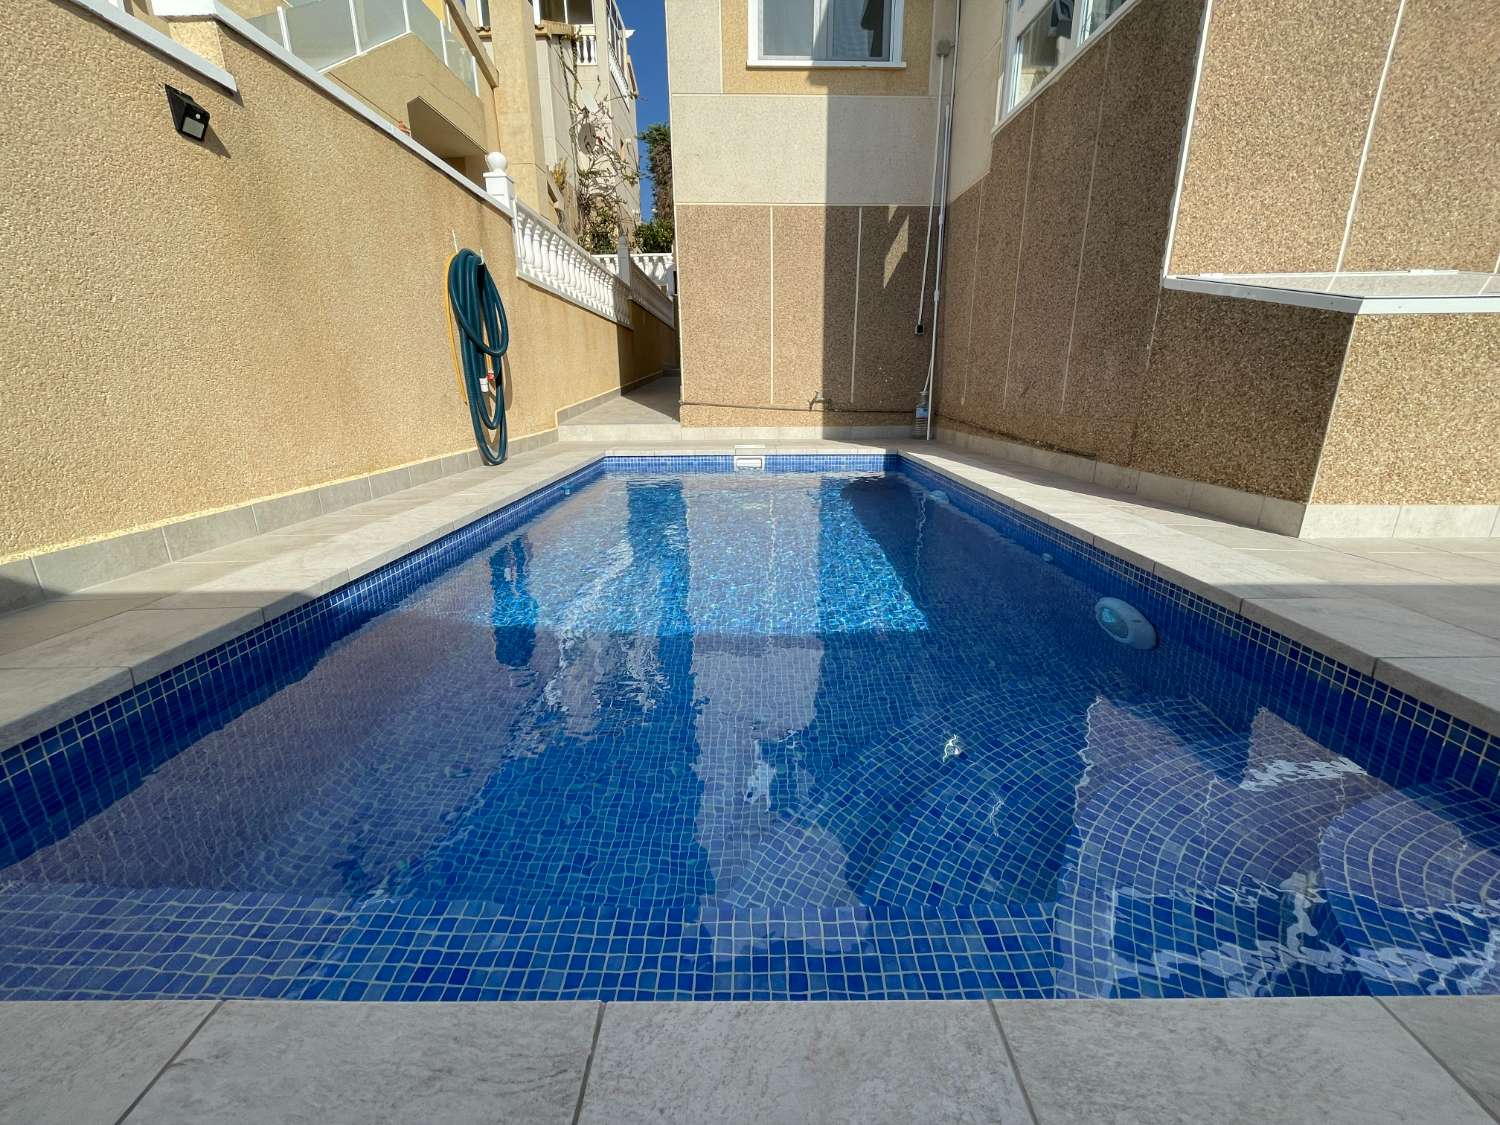 Chalet independiente de 3 dormitorios y 2 baños bellamente renovado con piscina privada.